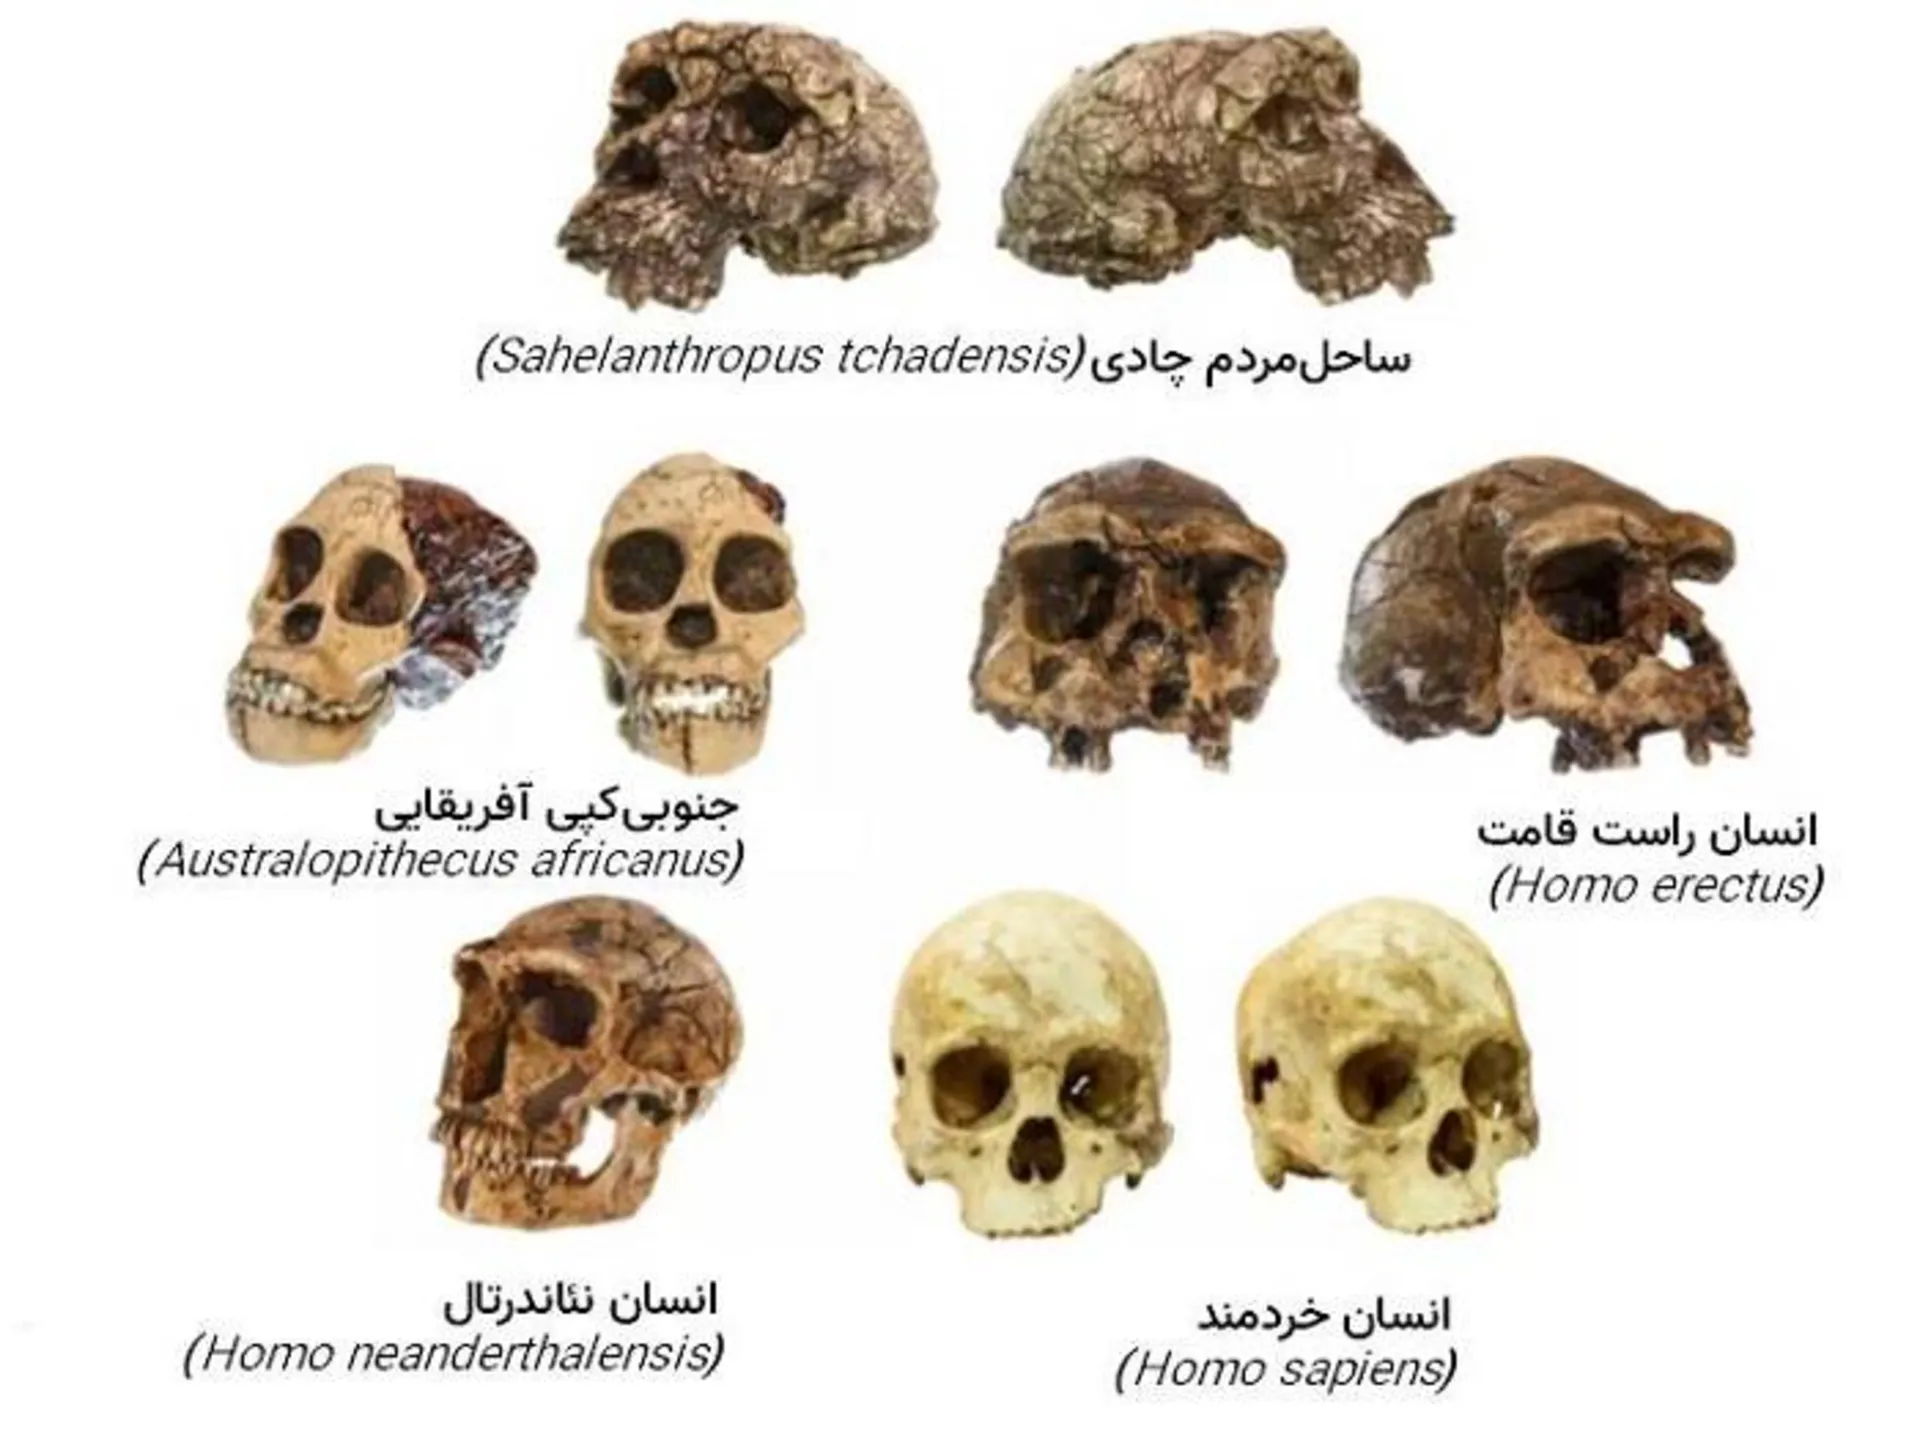 مرجع متخصصين ايران جمجمه گونه هاي انسان / skulls of human species